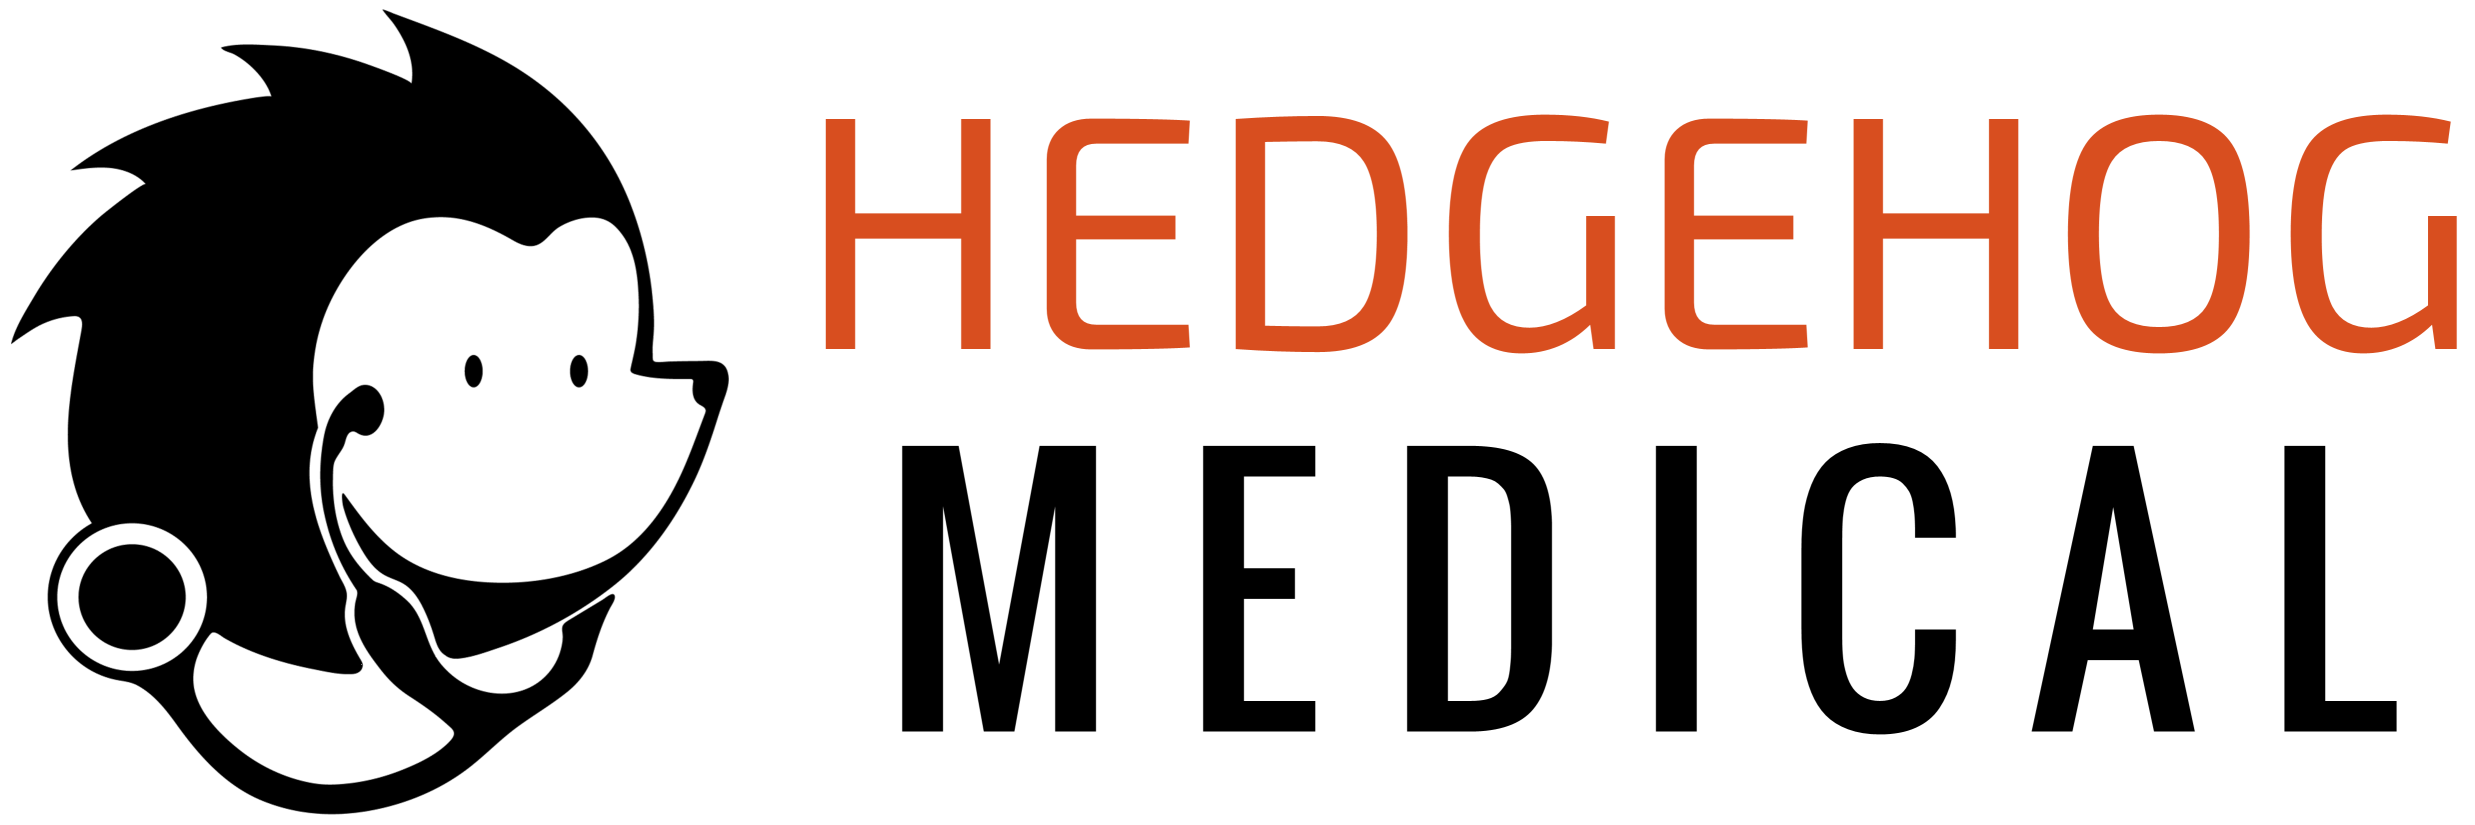 Hedgehog Medical